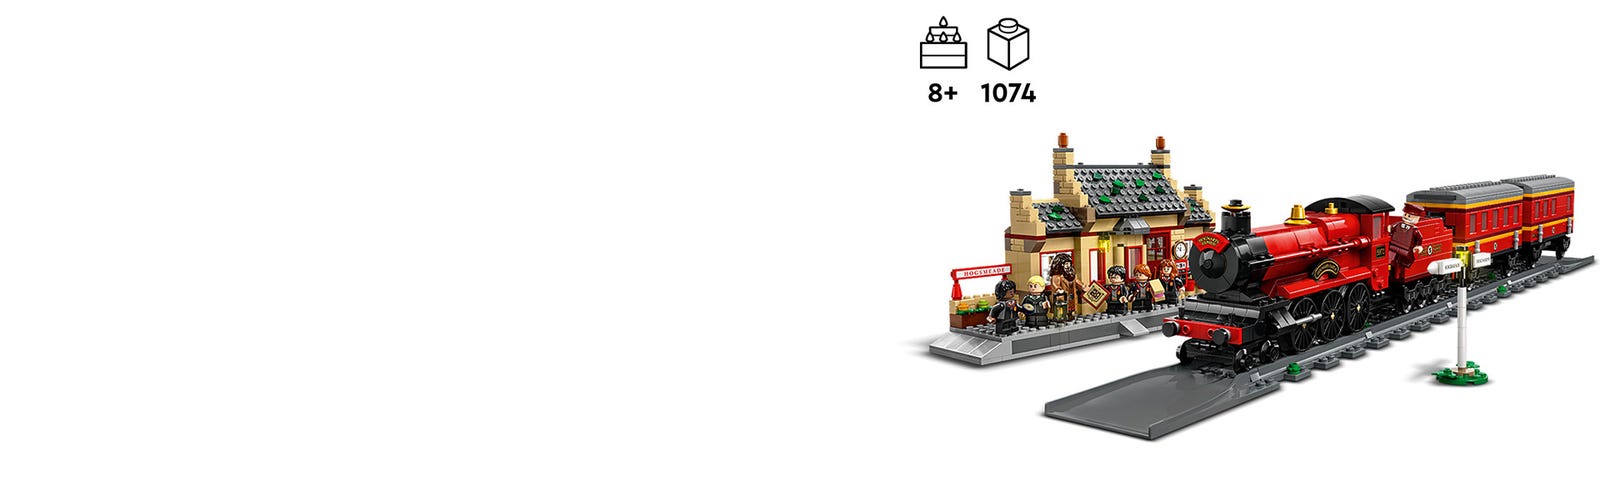 LEGO Harry Potter 76423 pas cher, Le Poudlard Express et la gare